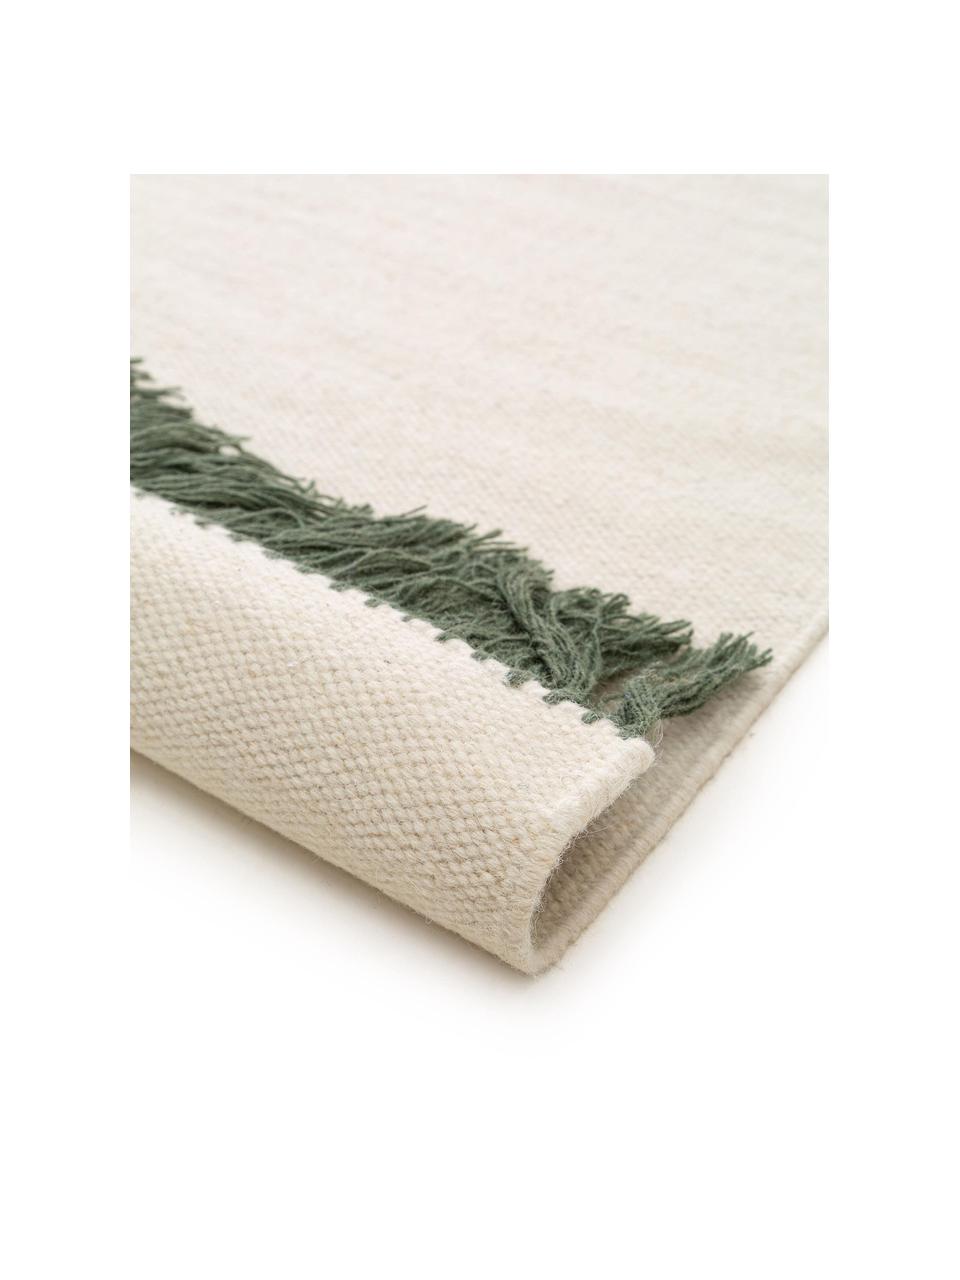 Ručně tkaný vlněný koberec s třásněmi Gitta, 90 % vlna, 10 % bavlna

V prvních týdnech používání vlněných koberců se může objevit charakteristický jev uvolňování vláken, který po několika týdnech používání zmizí., Tlumeně bílá, tmavě zelená, Š 80 cm, D 150 cm (velikost XS)